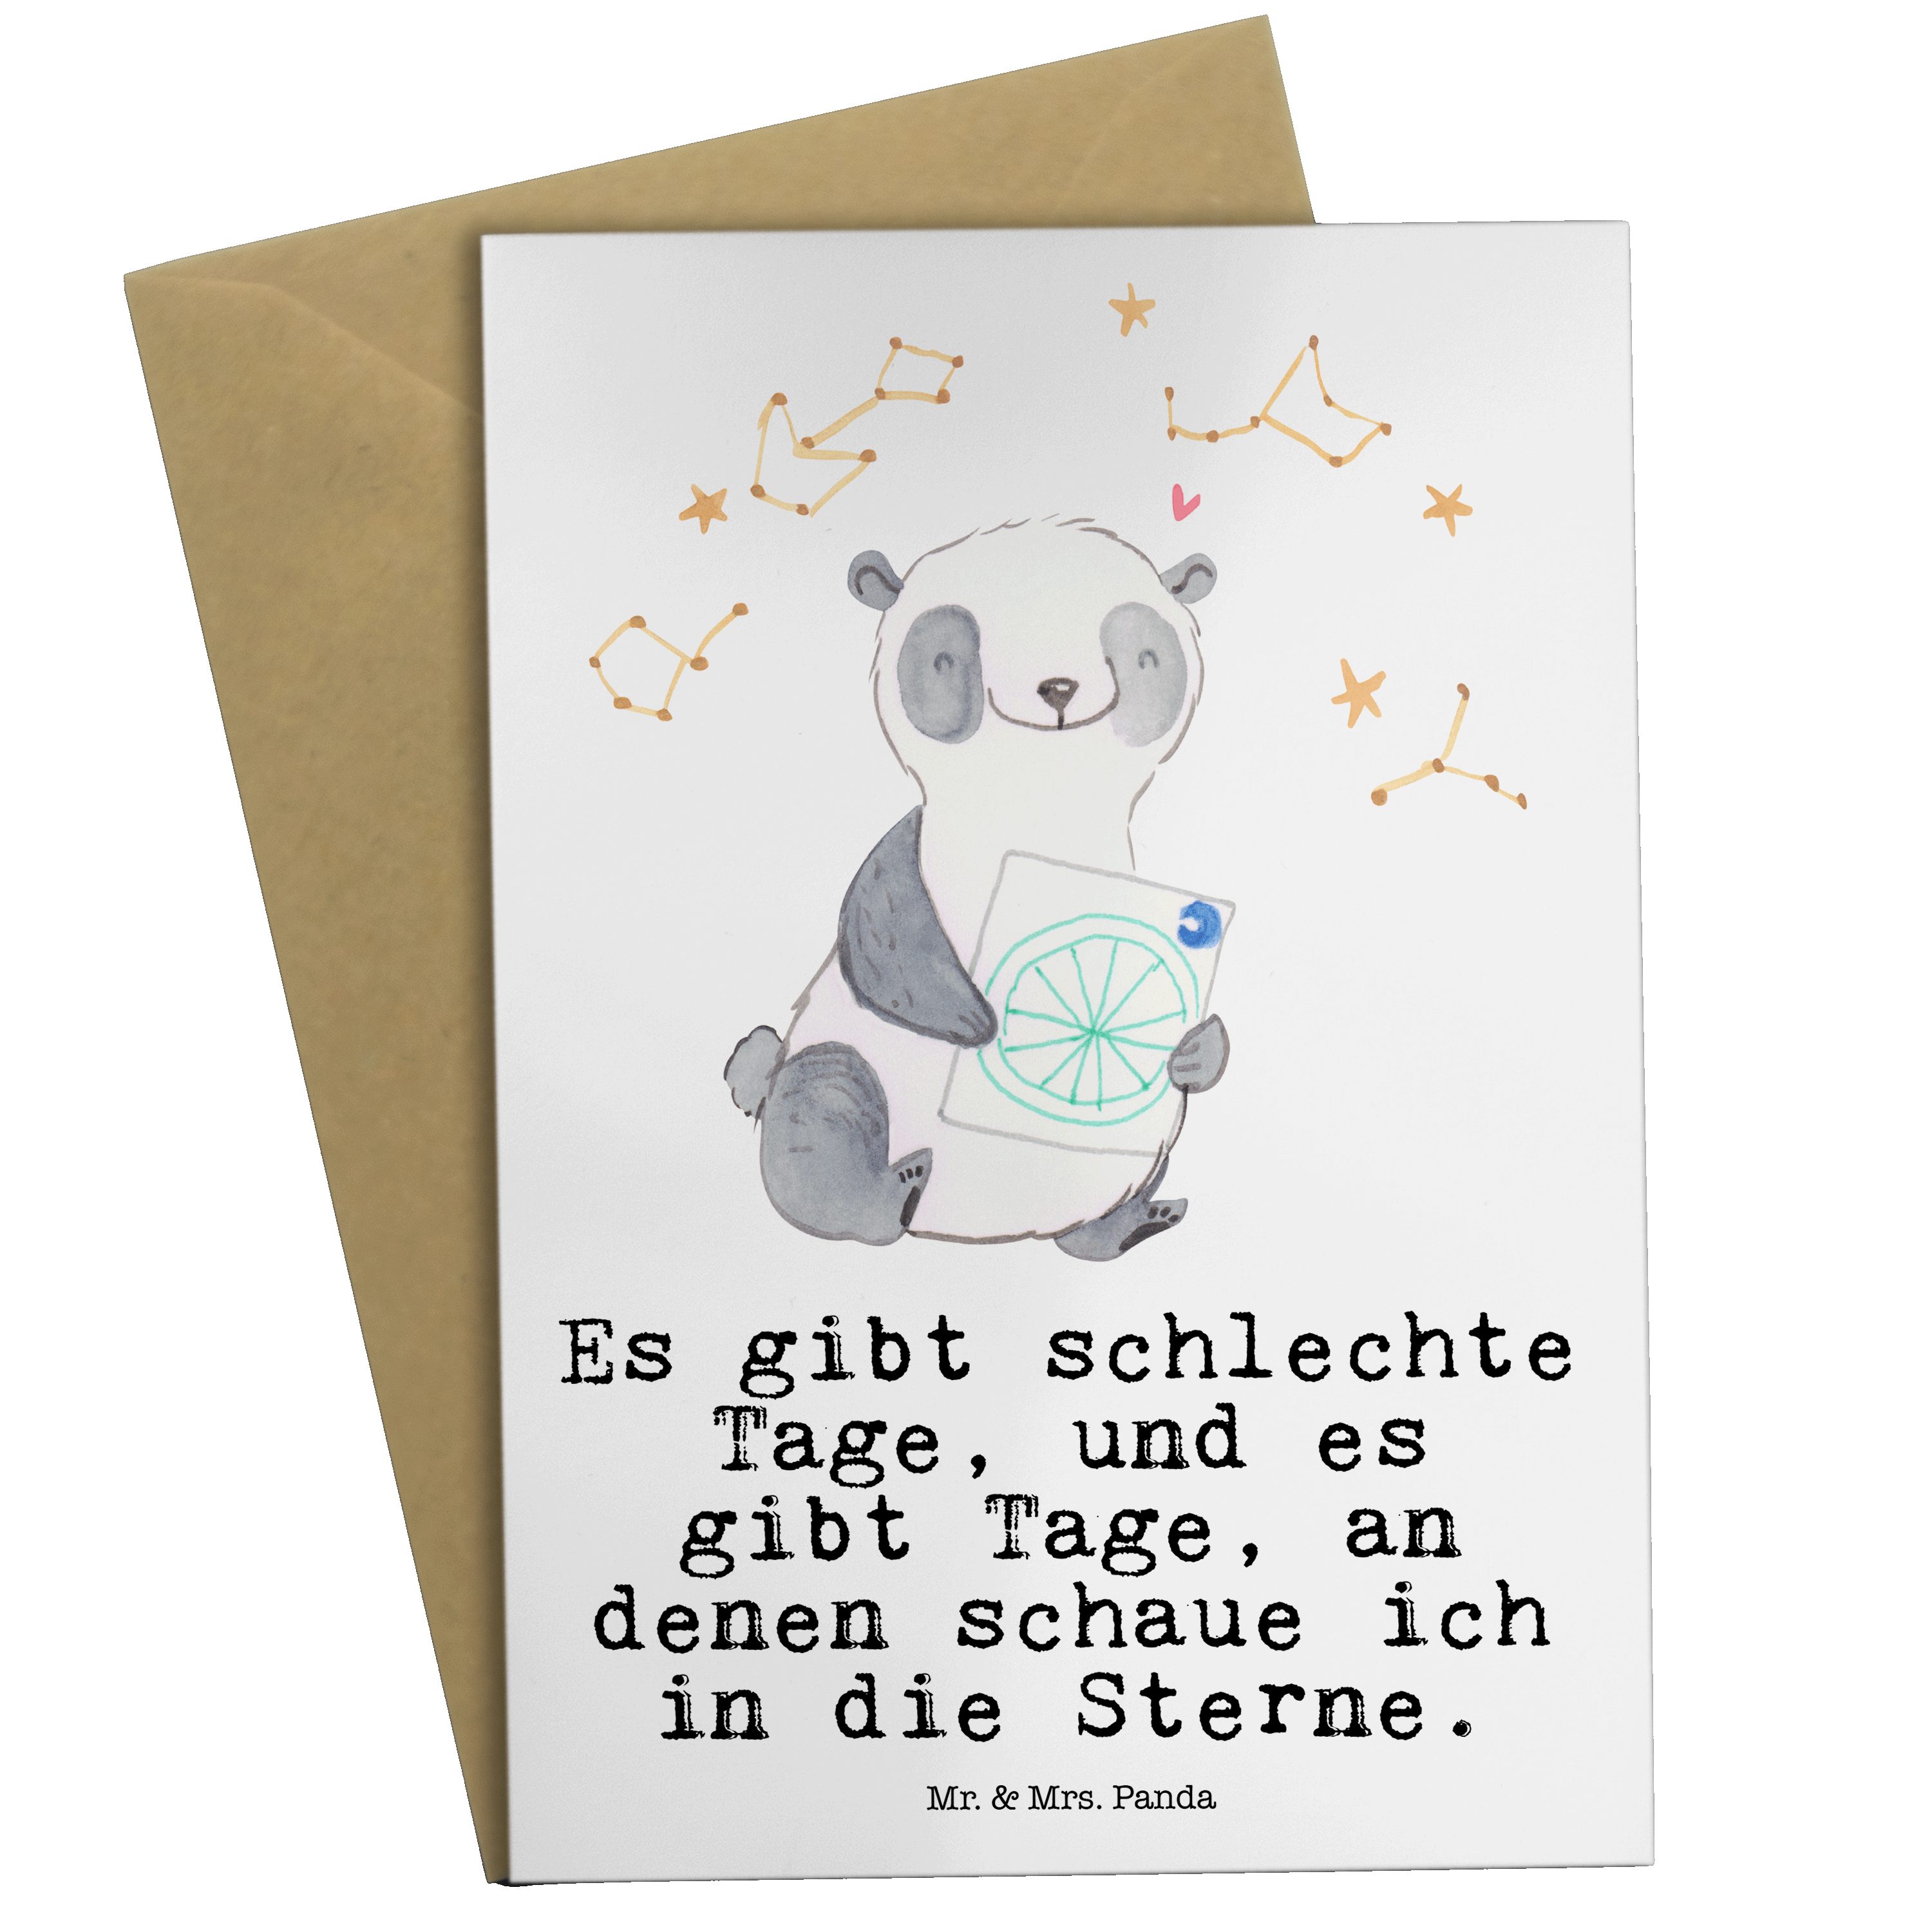 Mr. & Mrs. Panda Grußkarte Panda Astrologie Tage - Weiß - Geschenk, Glückwunschkarte, Hochzeitsk